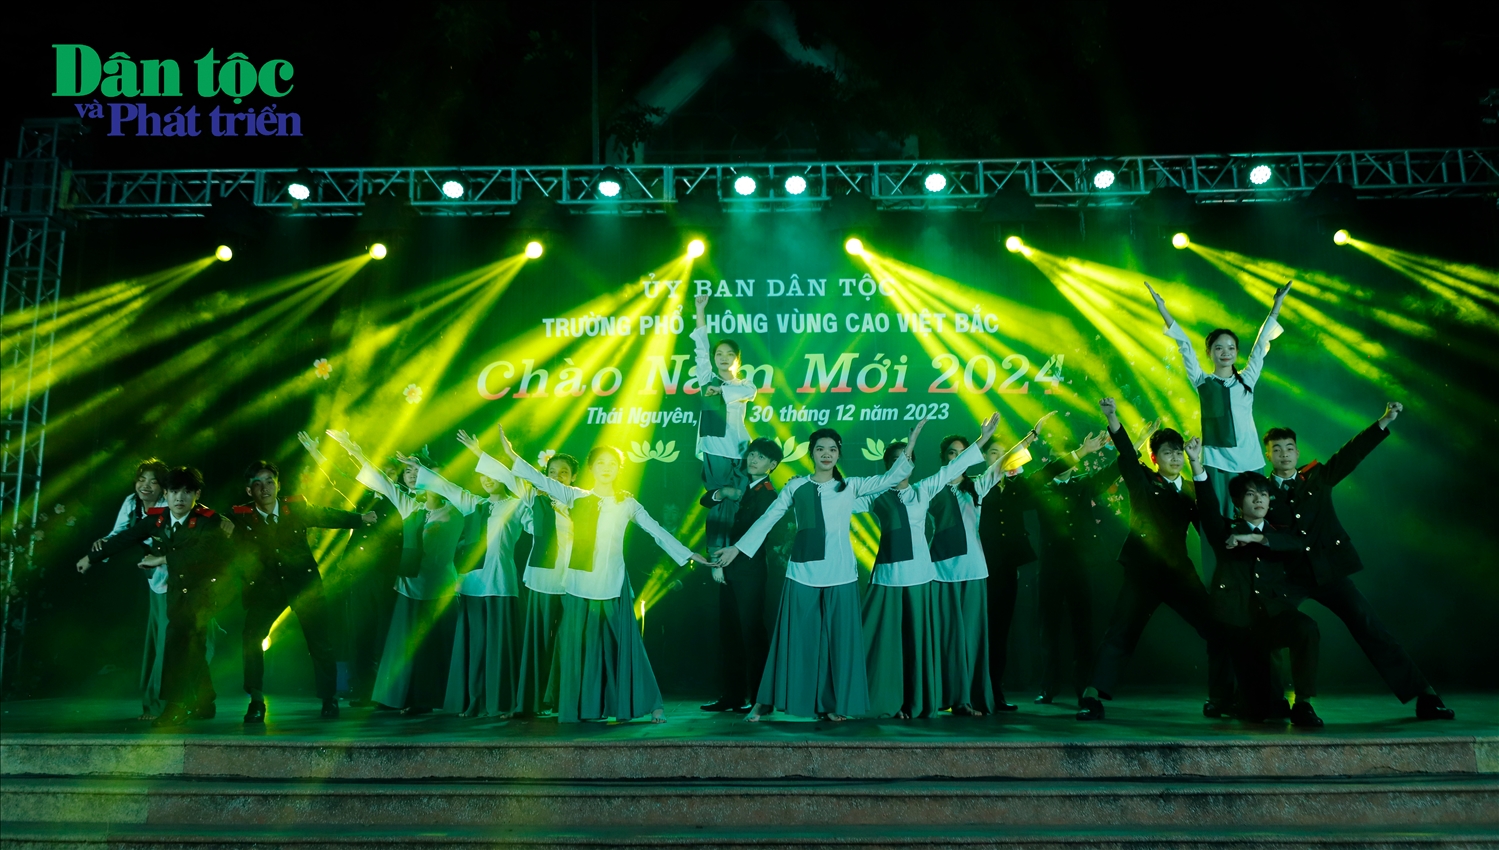 Phần giao lưu đến từ Đội Văn nghệ Trường Văn hóa, Bộ Công an với tiết mục hát, múa ""Một vòng Việt Nam"